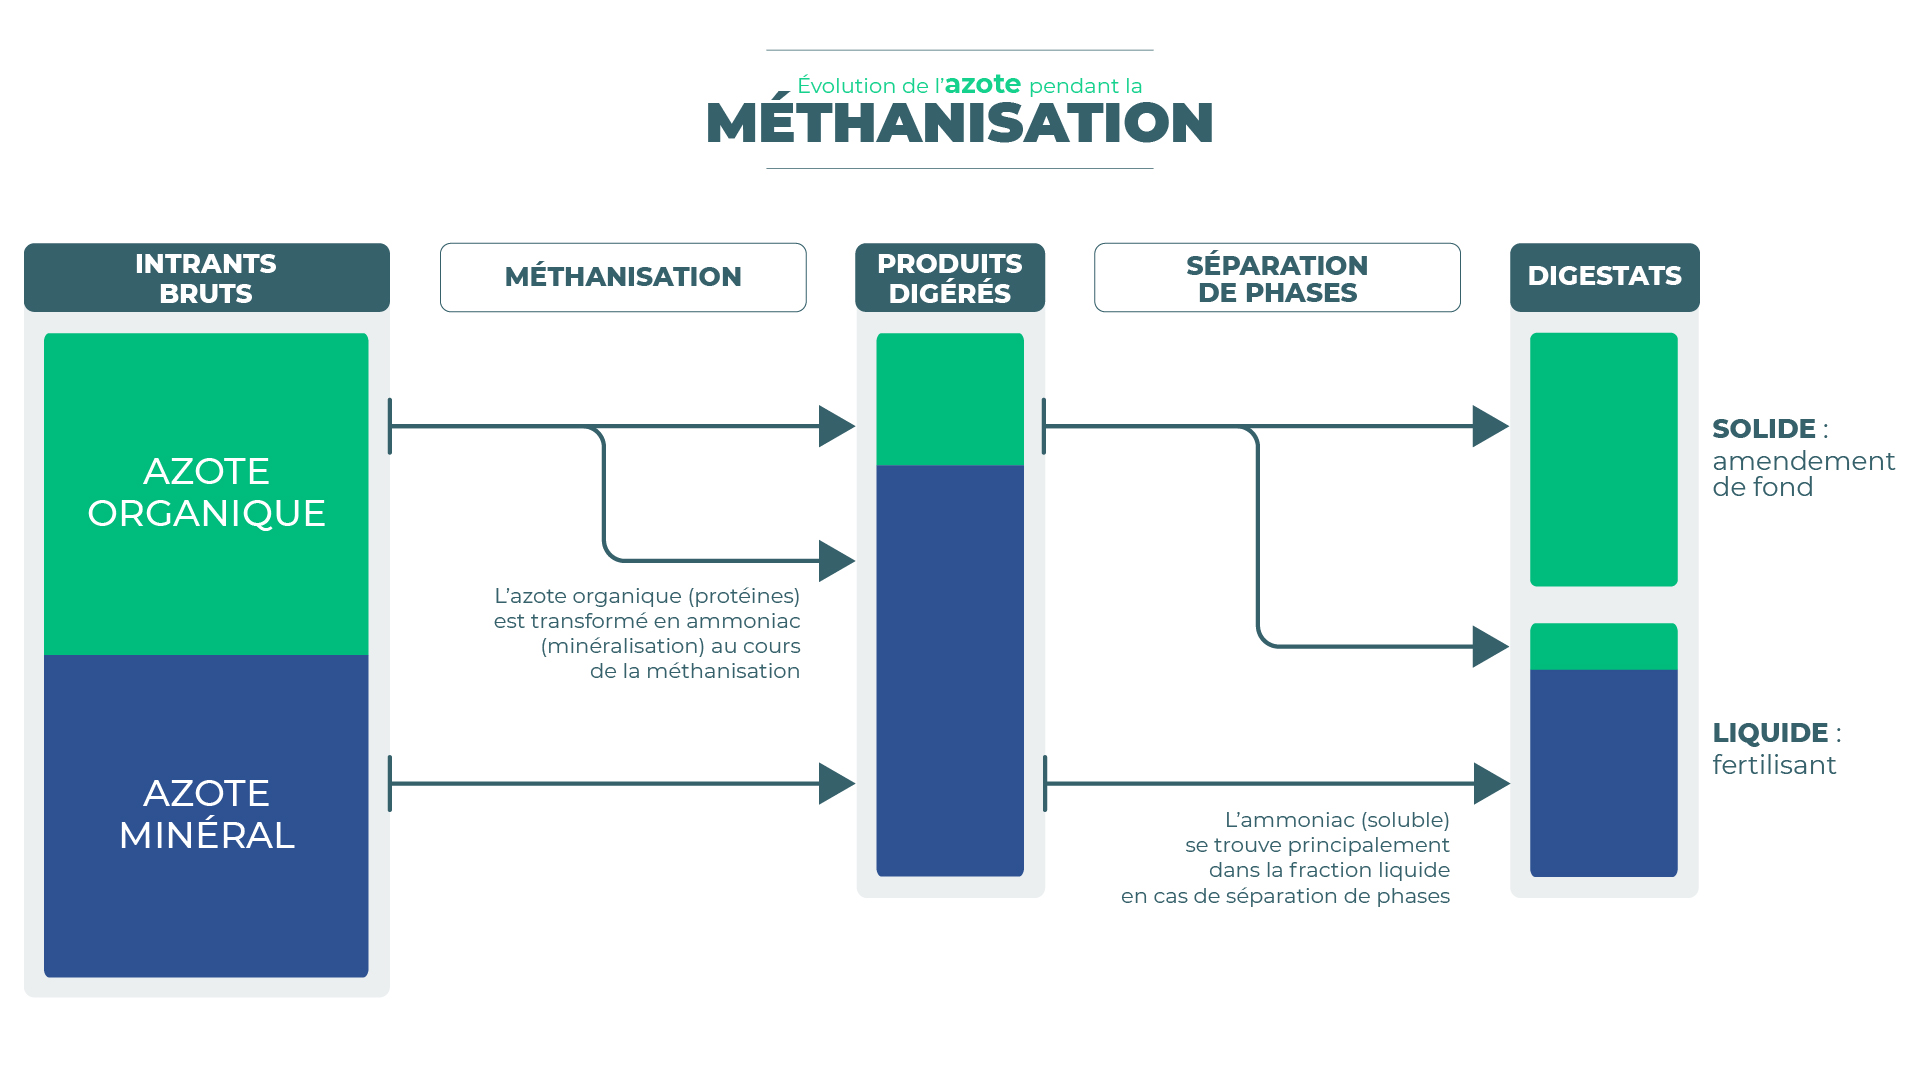 Evolution de l'azote pendant la méthanisation